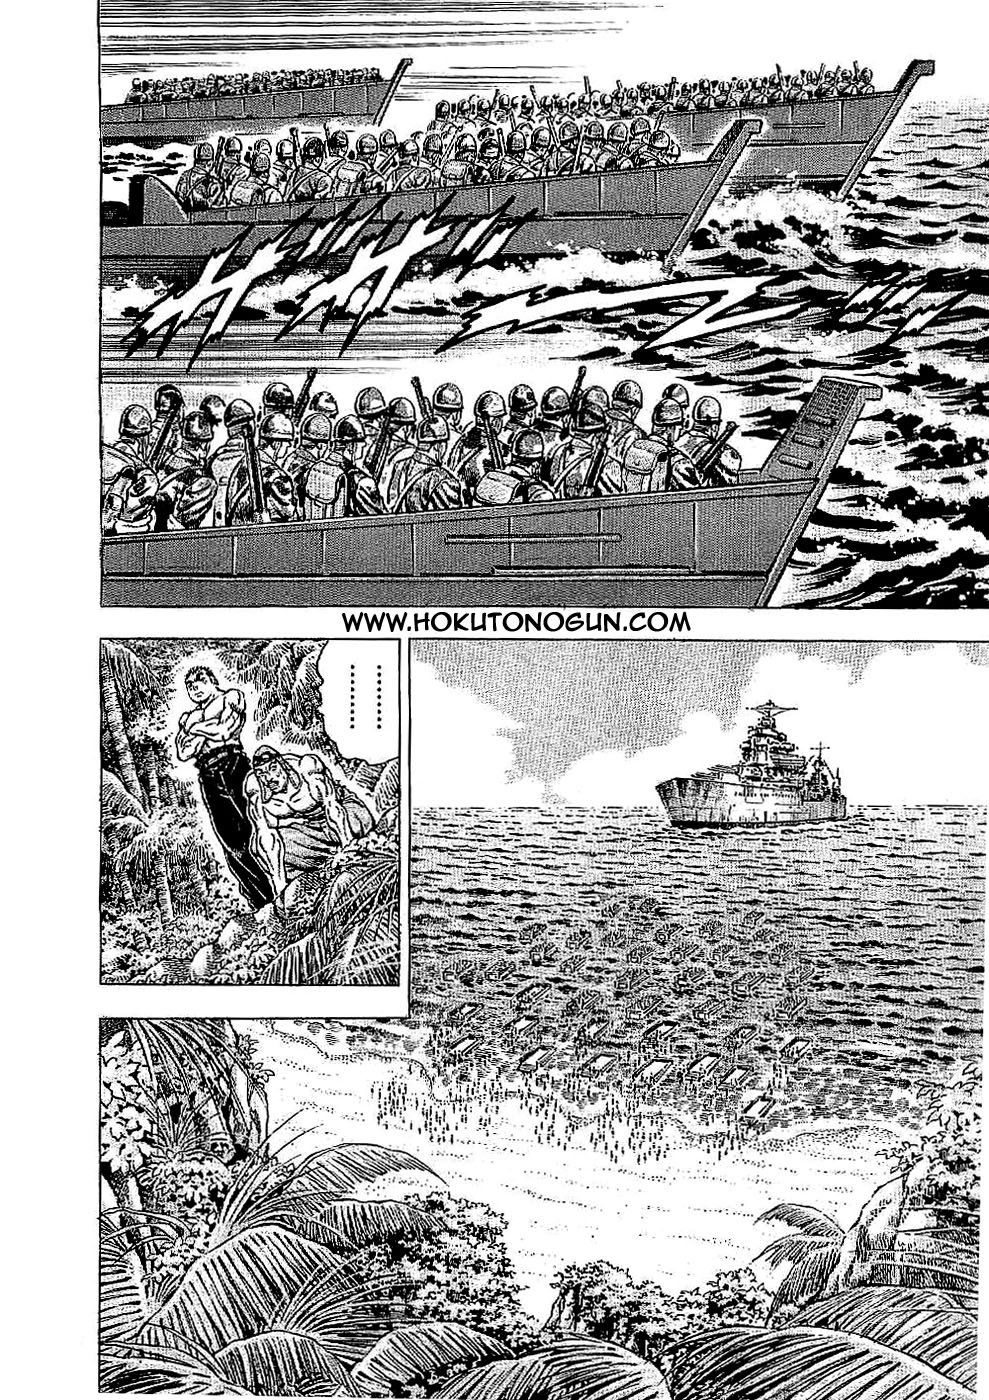 Tenkamusou Edajima Heihachi Den Vol.3 Ch.14